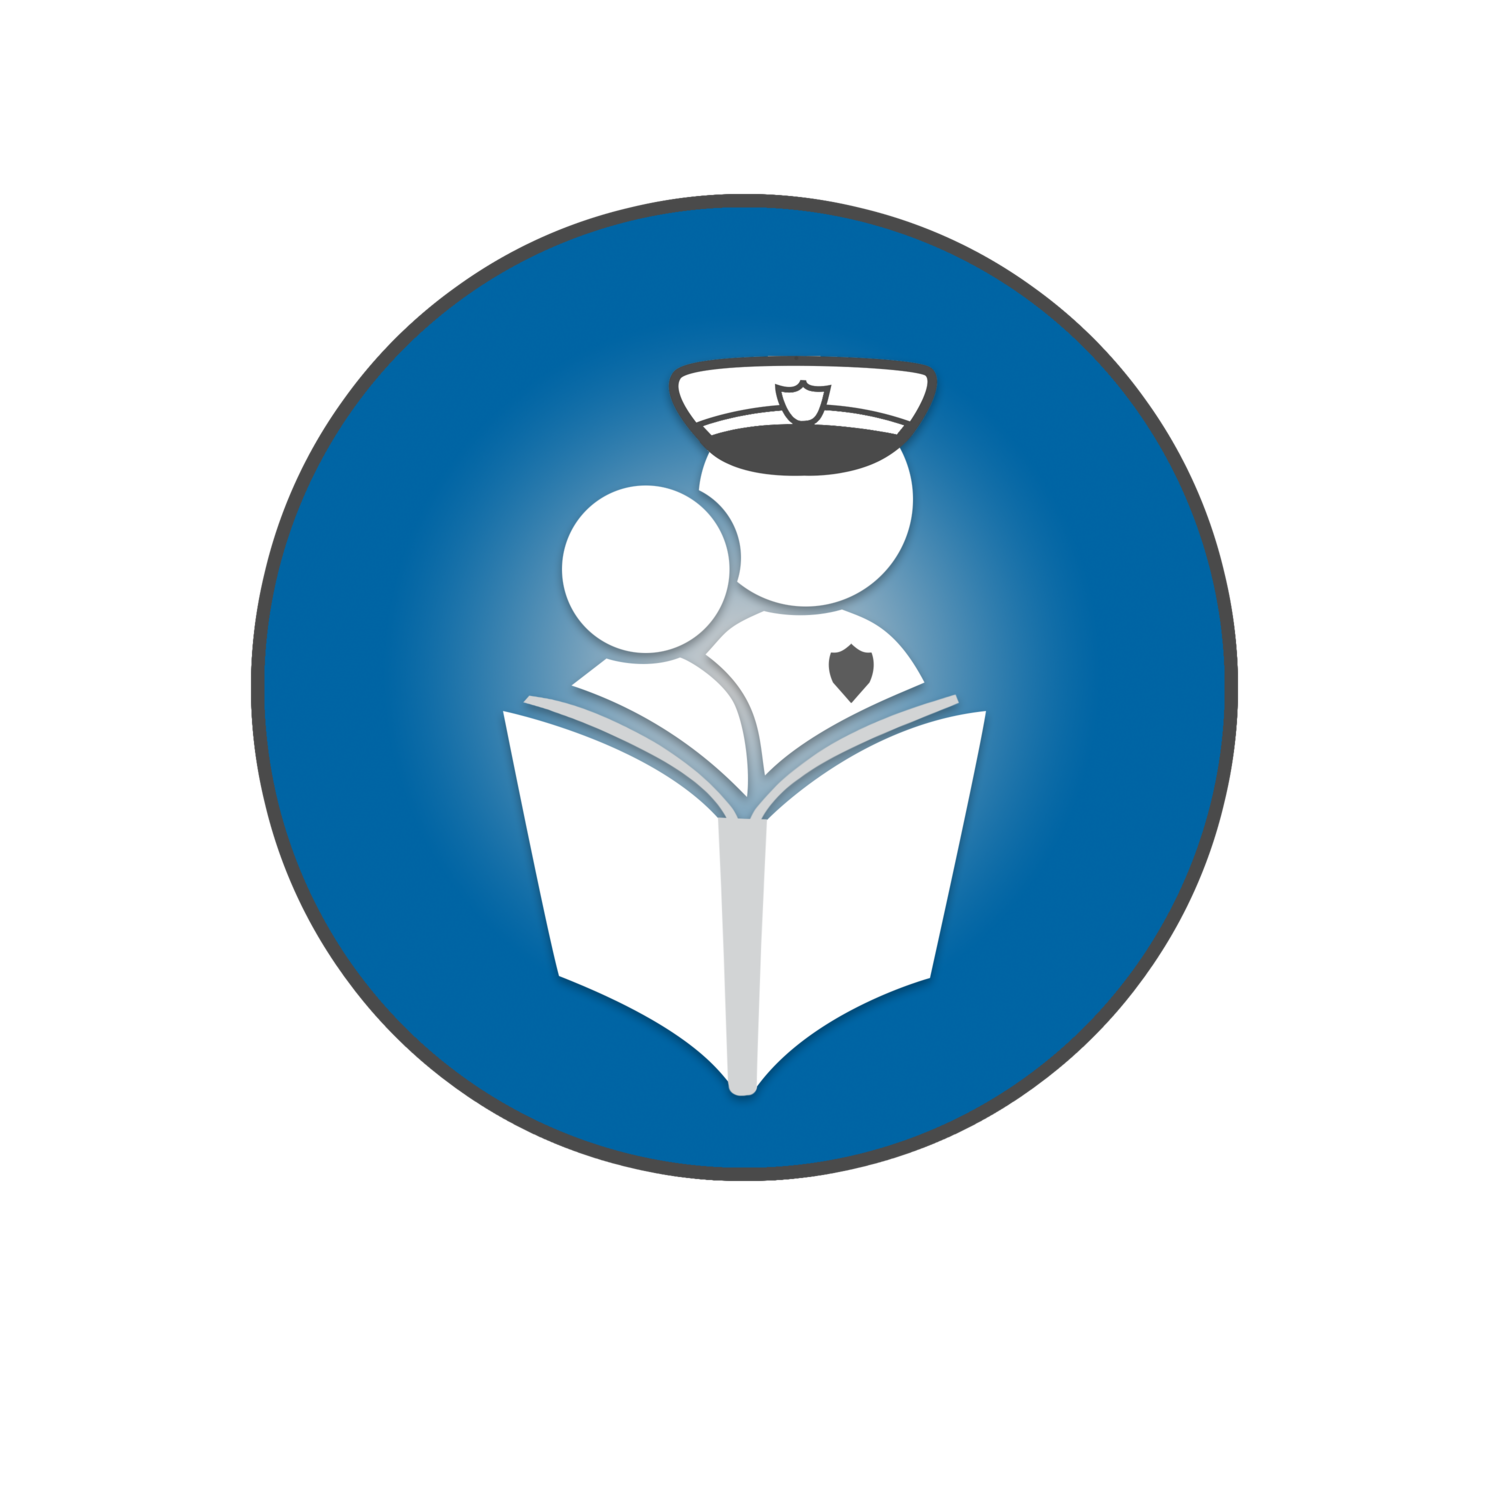 Crime Prevention Fund